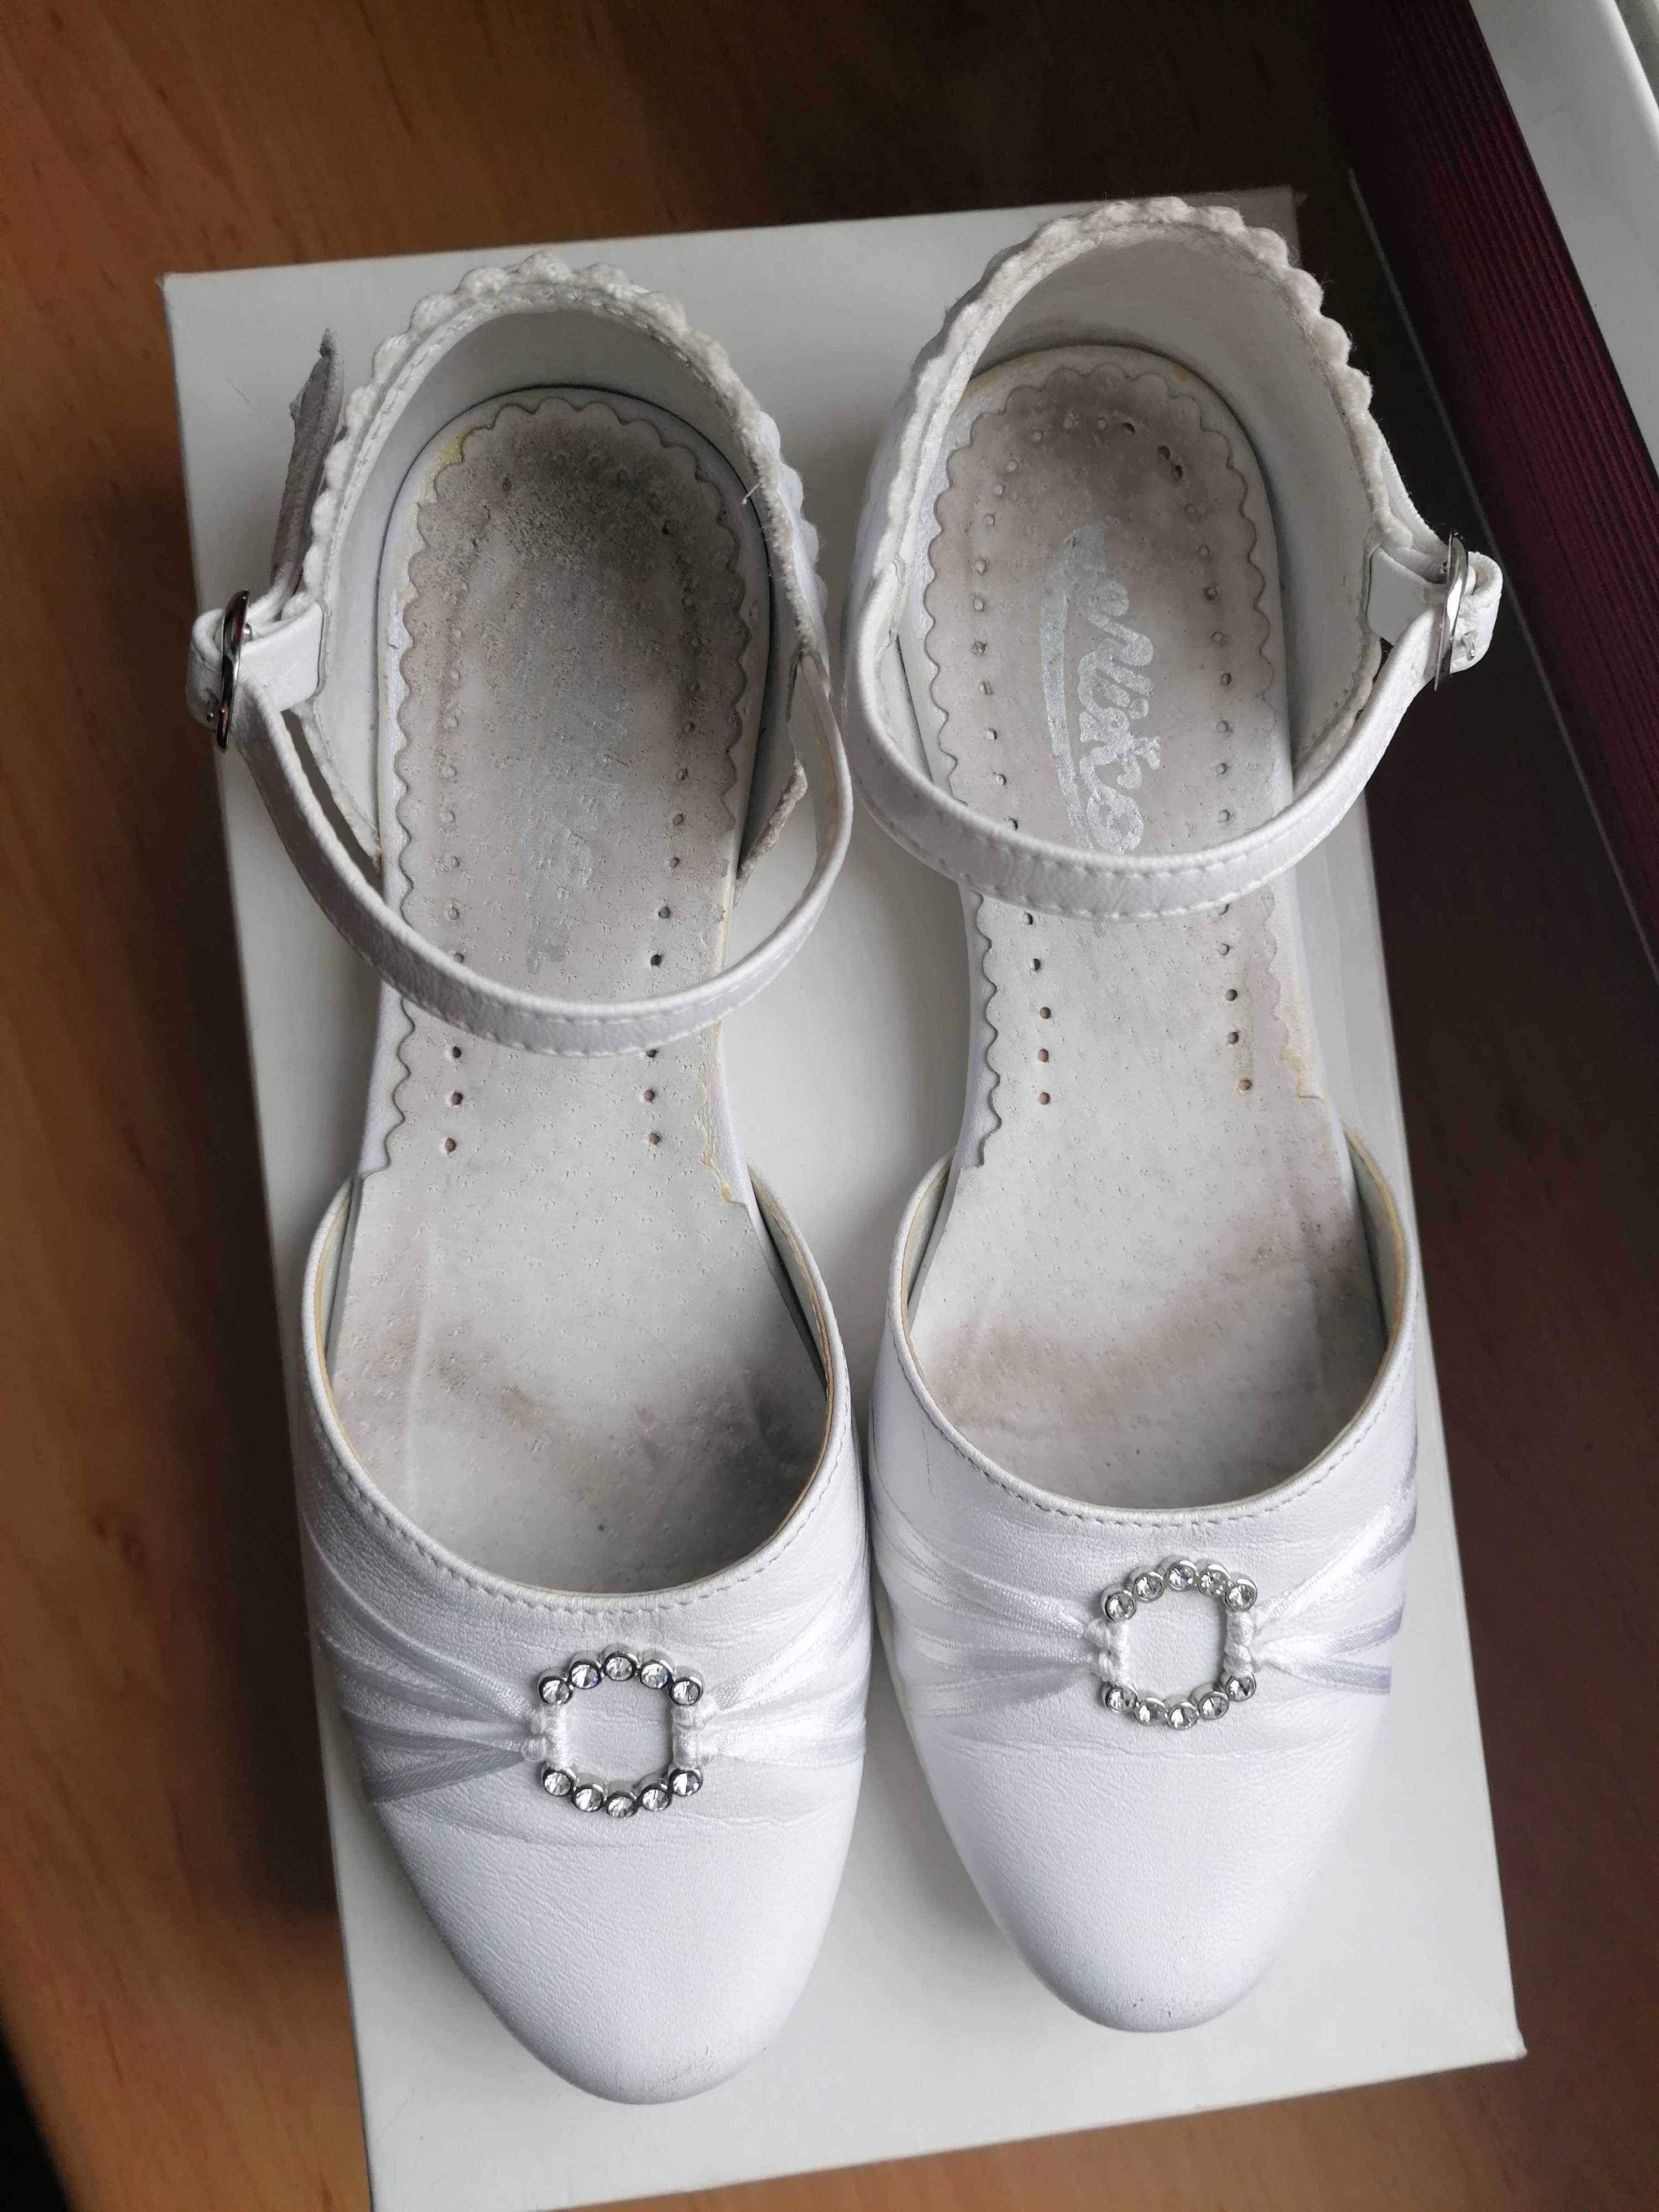 Buty białe (komunijne) rozmiar 32, wkładka 20,5 cm